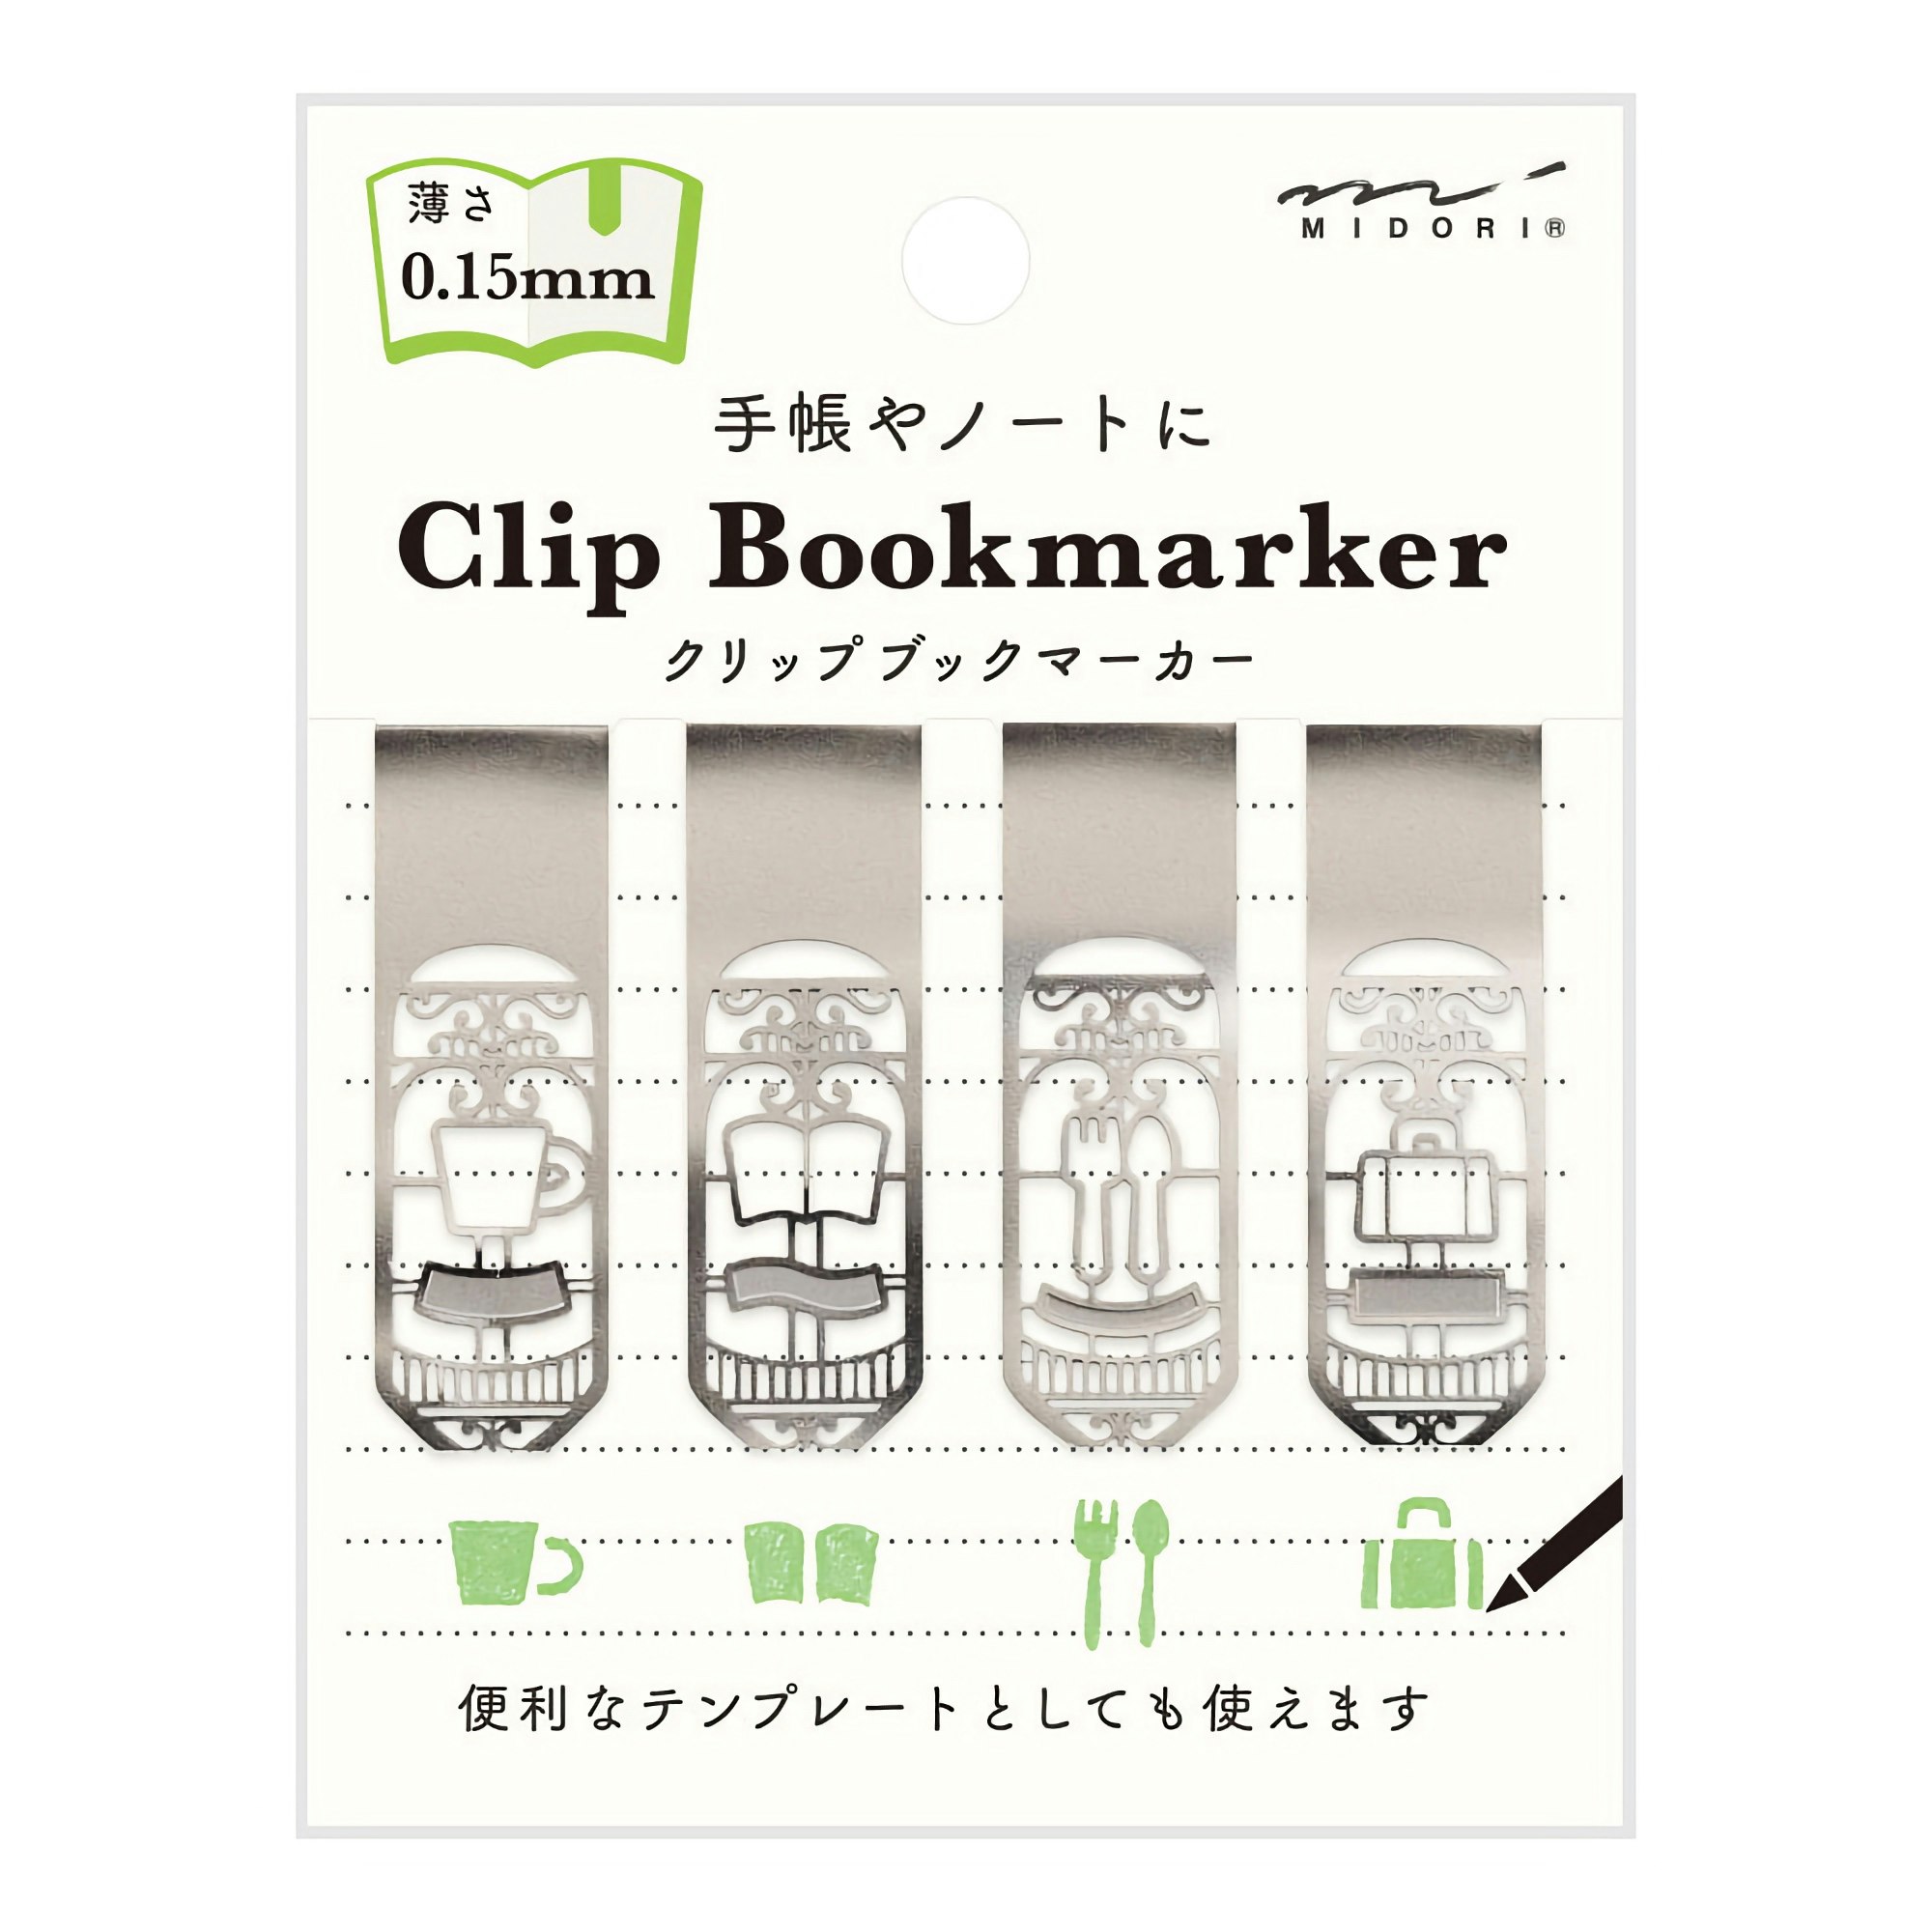 Midori Clip Bookmarker Life